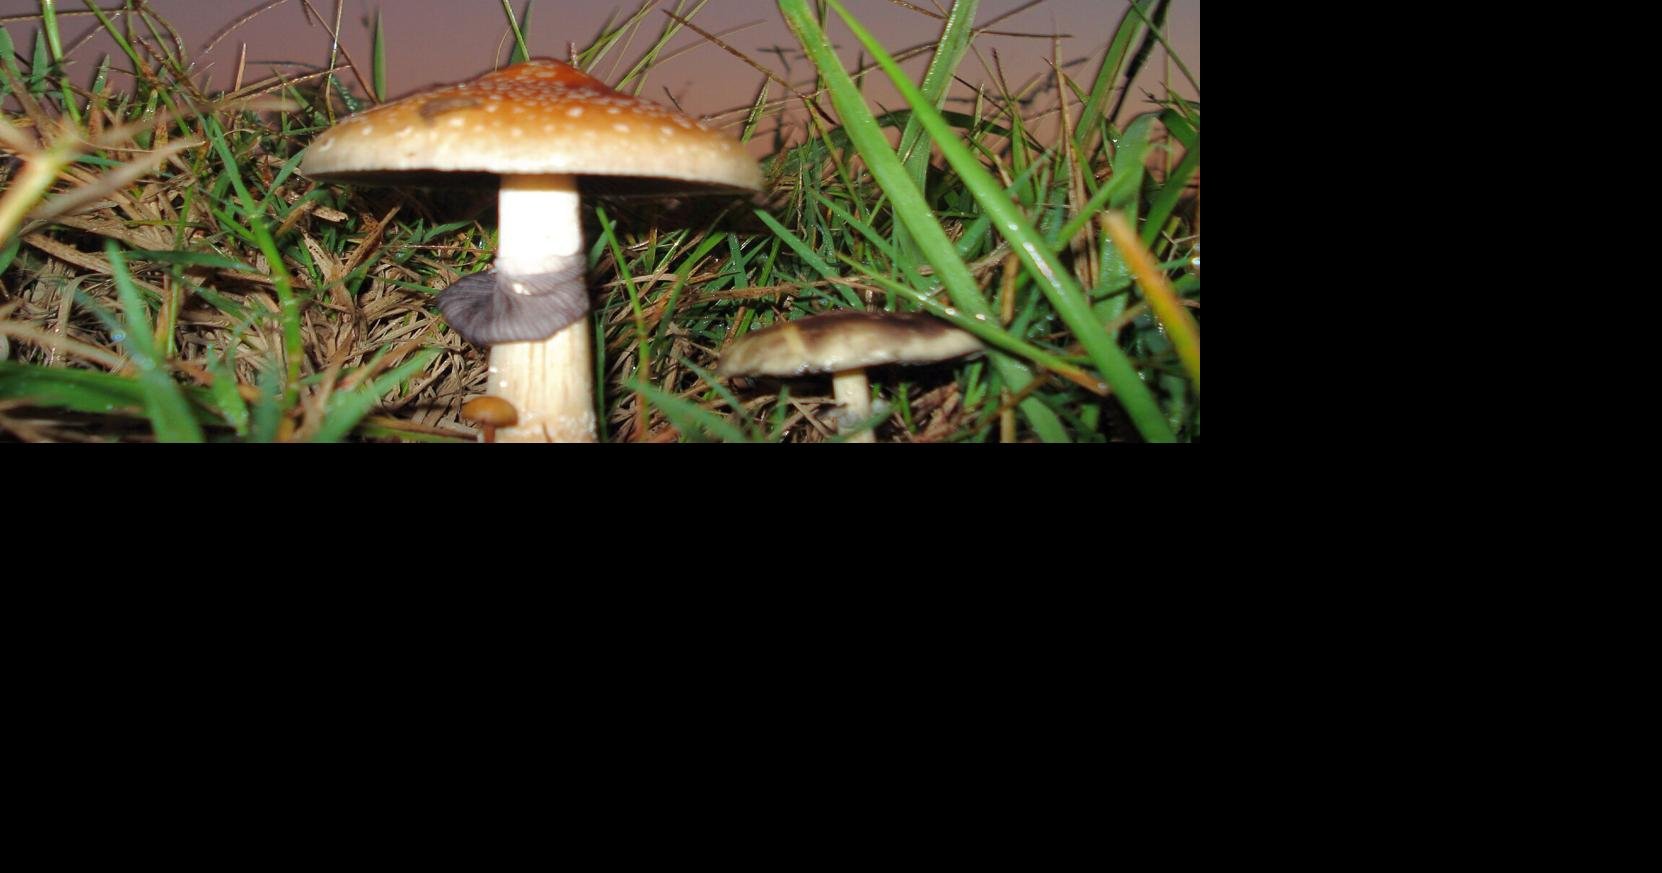 hallucinogenic mushrooms cow manure